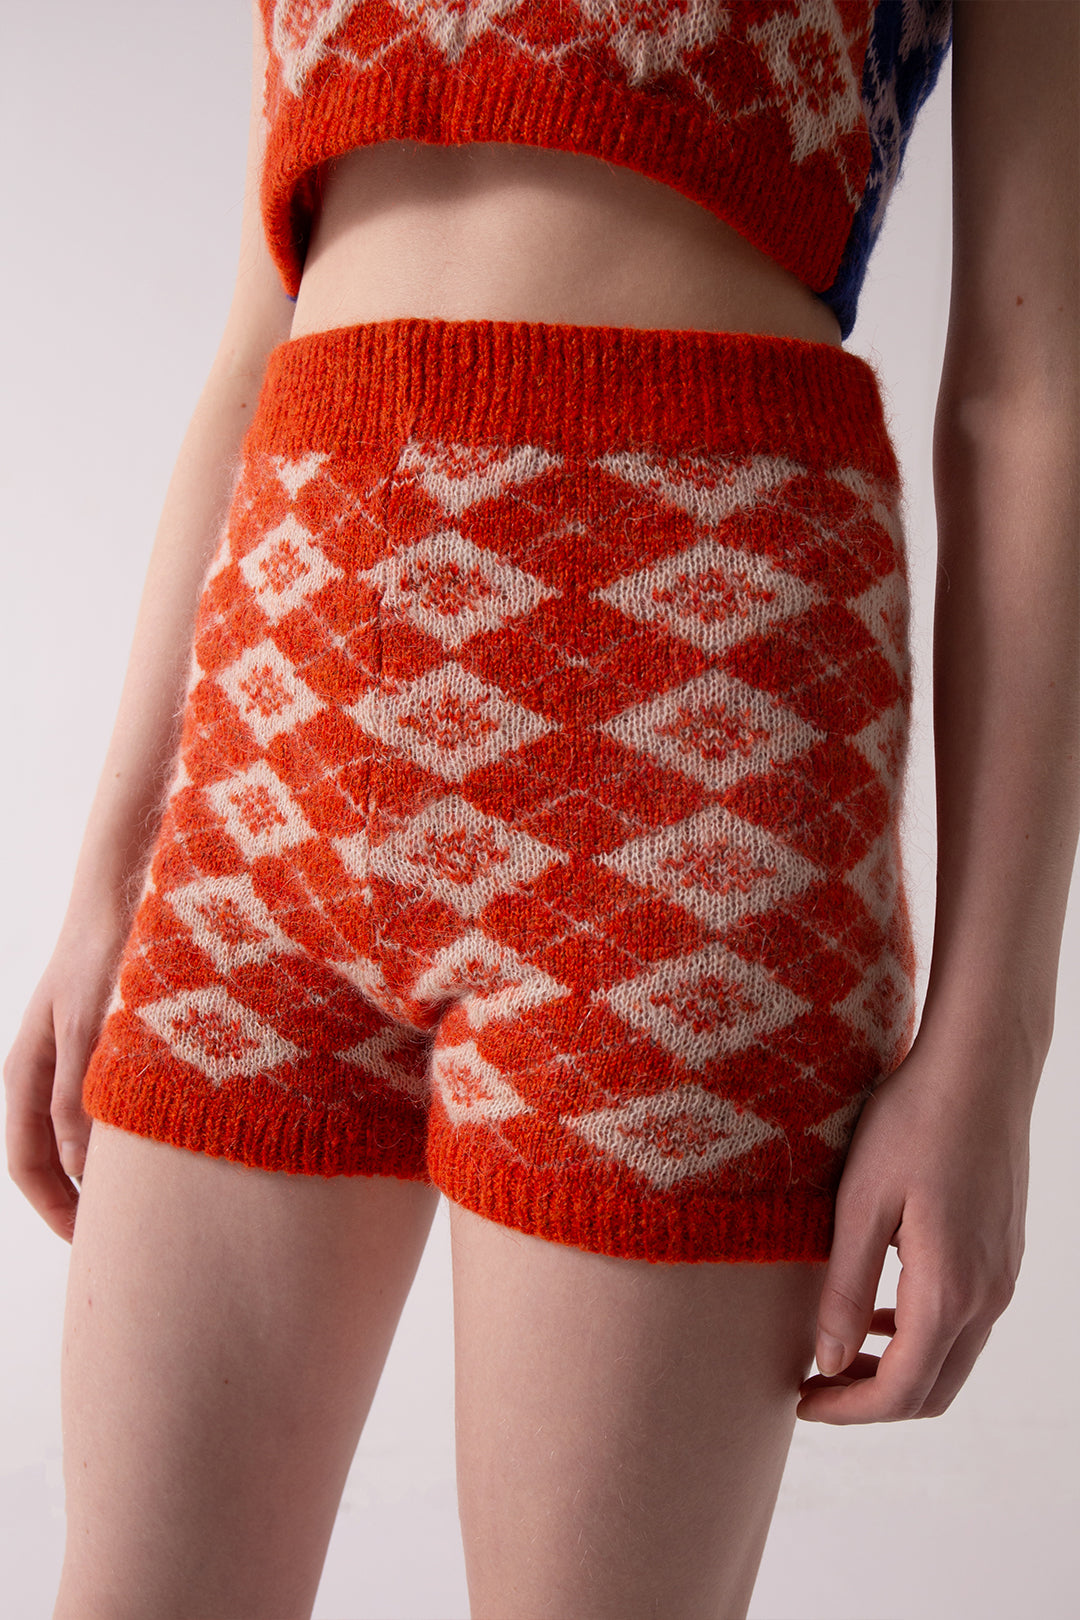 Chelsea knitted leggings